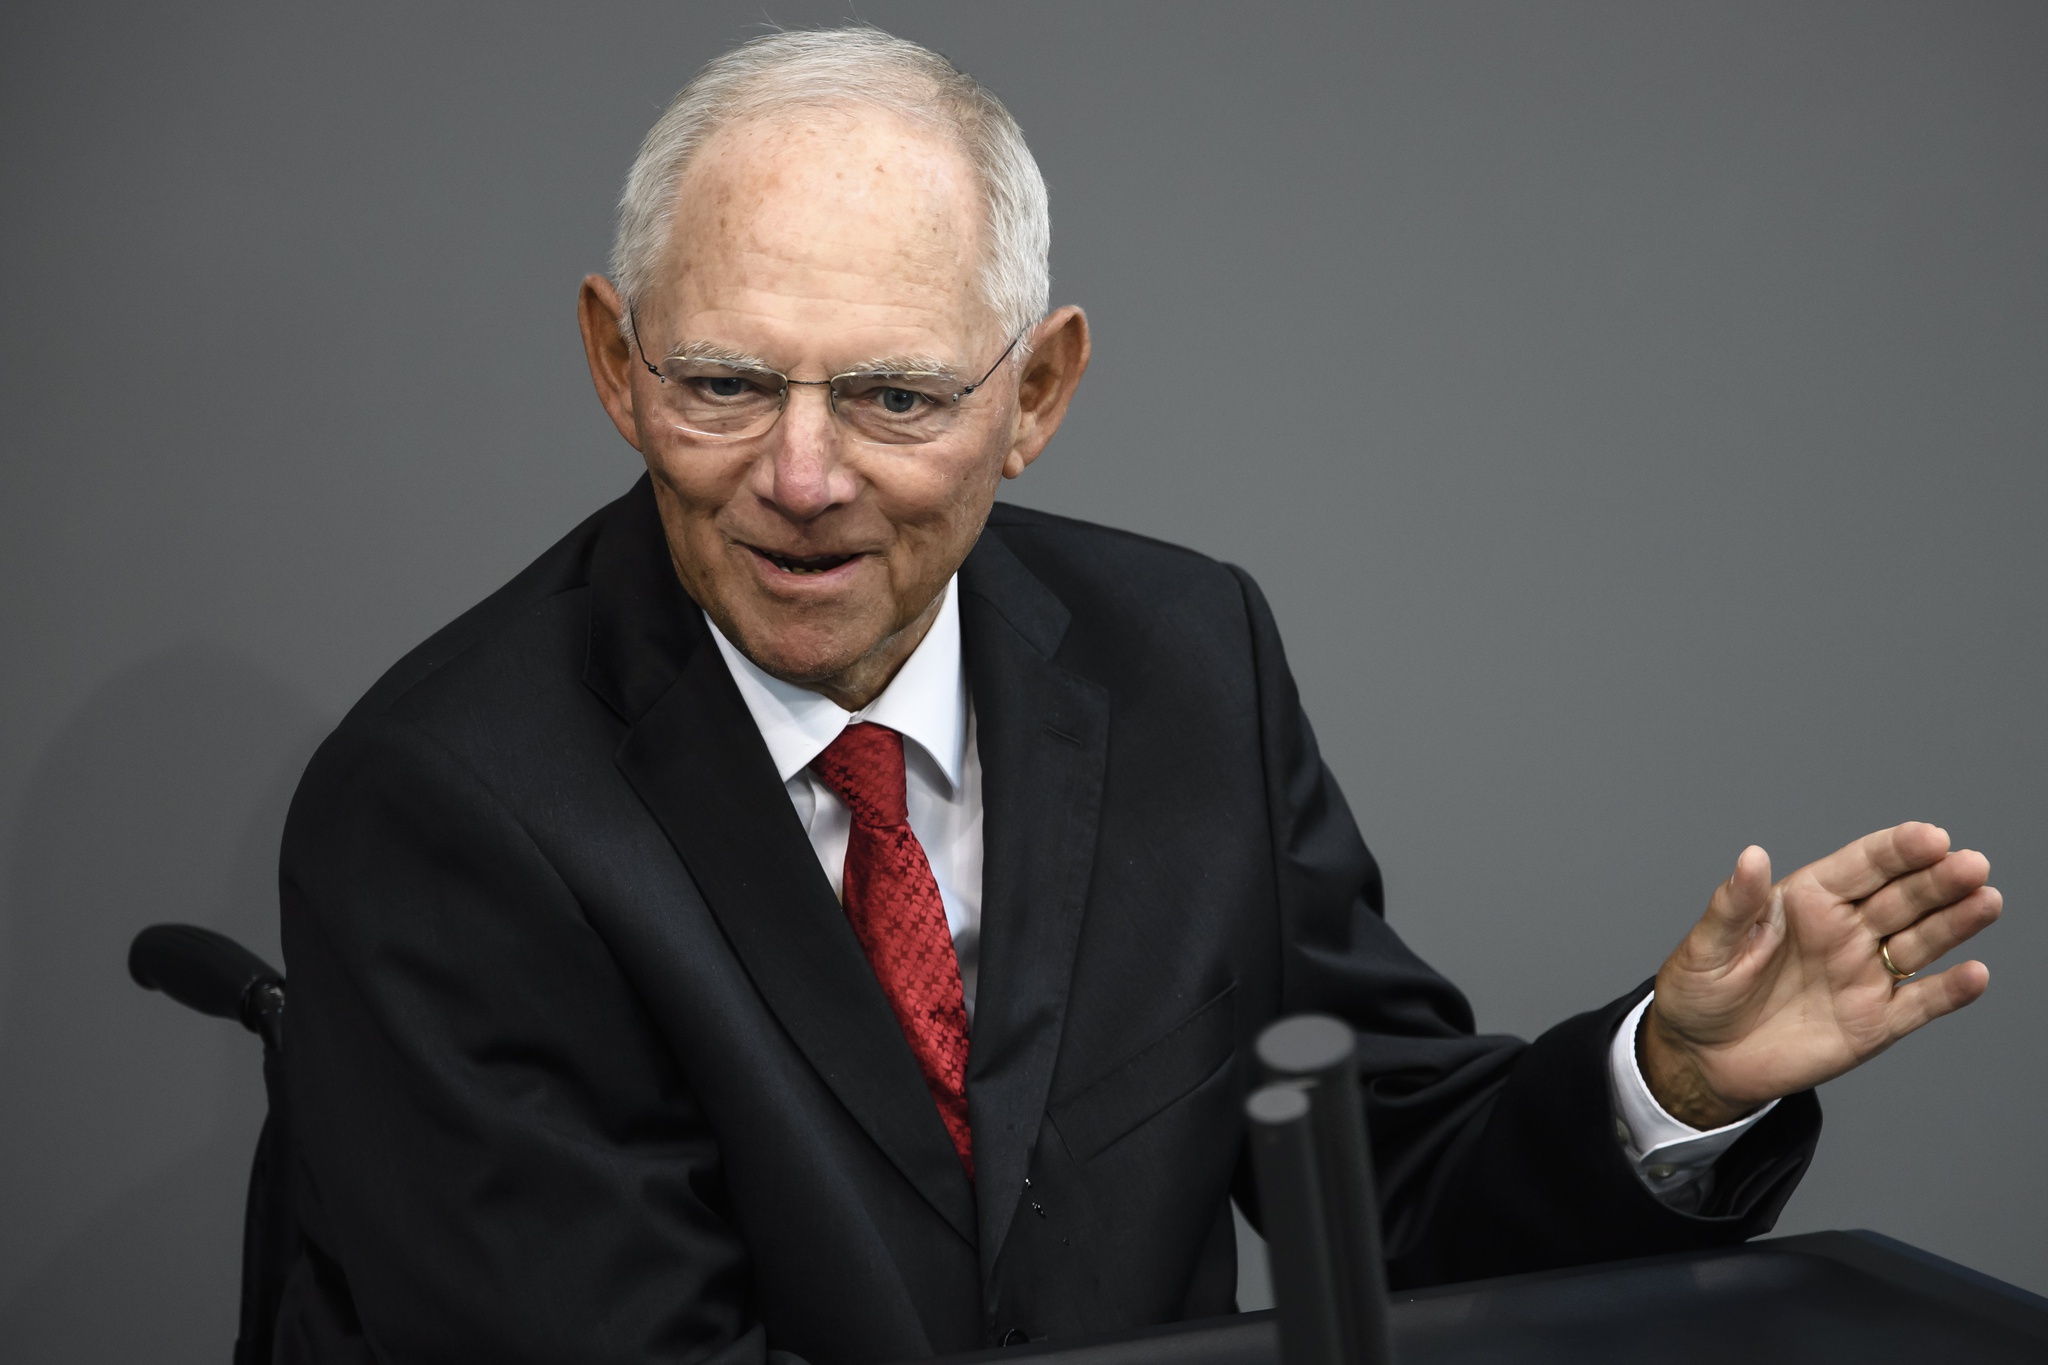 Muere Wolfgang Schäuble, ex ministro de Finanzas alemán |  Alemania